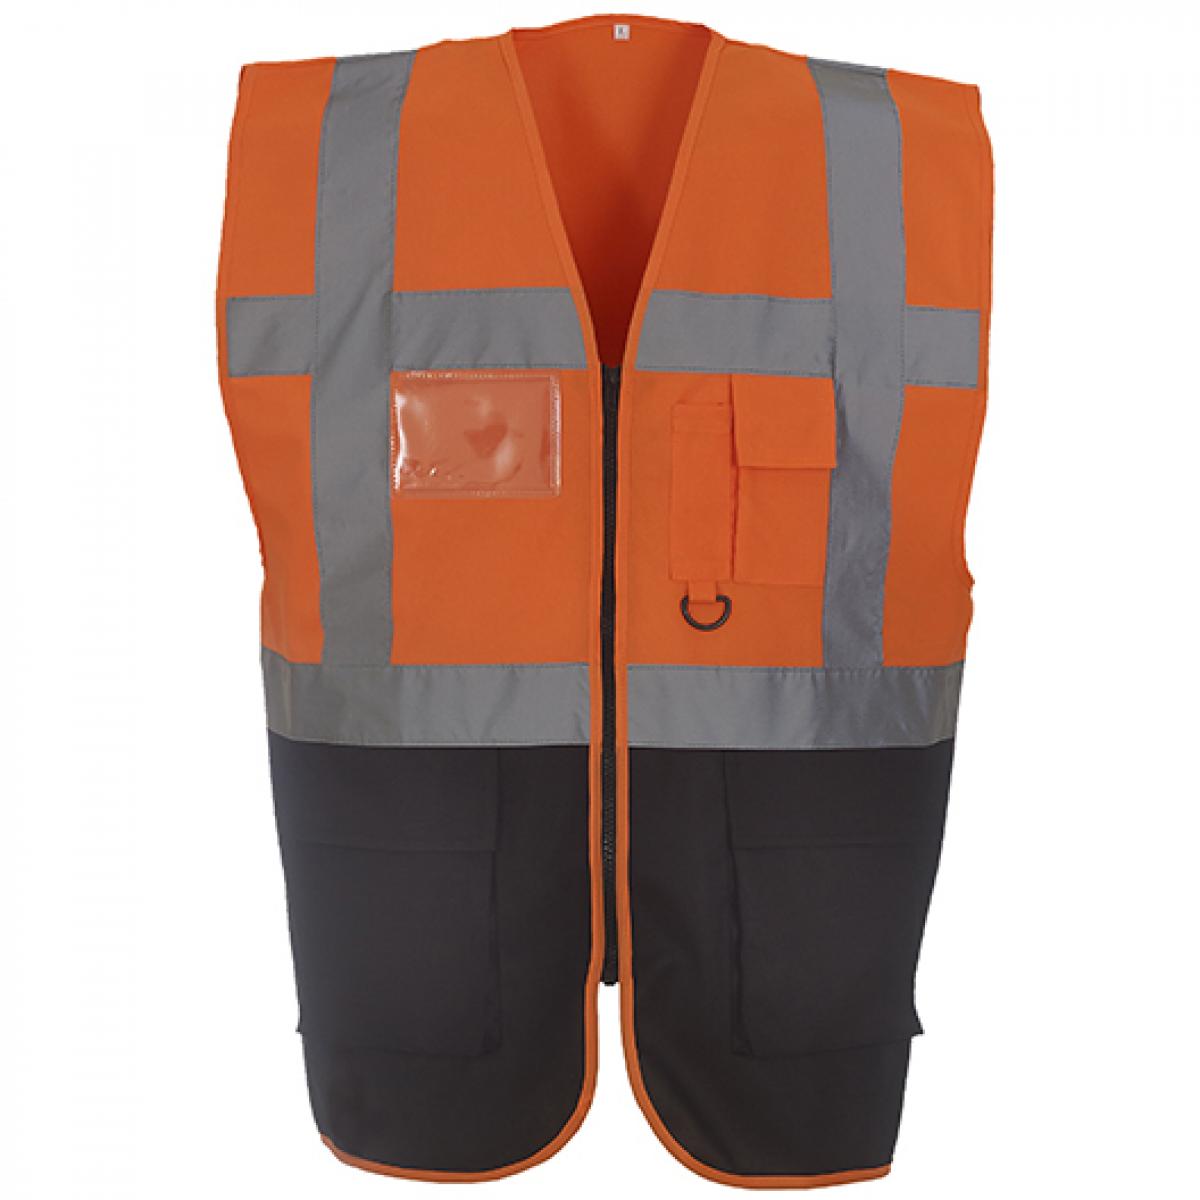 Hersteller: YOKO Herstellernummer: HVW801 Artikelbezeichnung: Herren Multi-Functional Executive Waistcoat Farbe: Hi-Vis Orange/Black